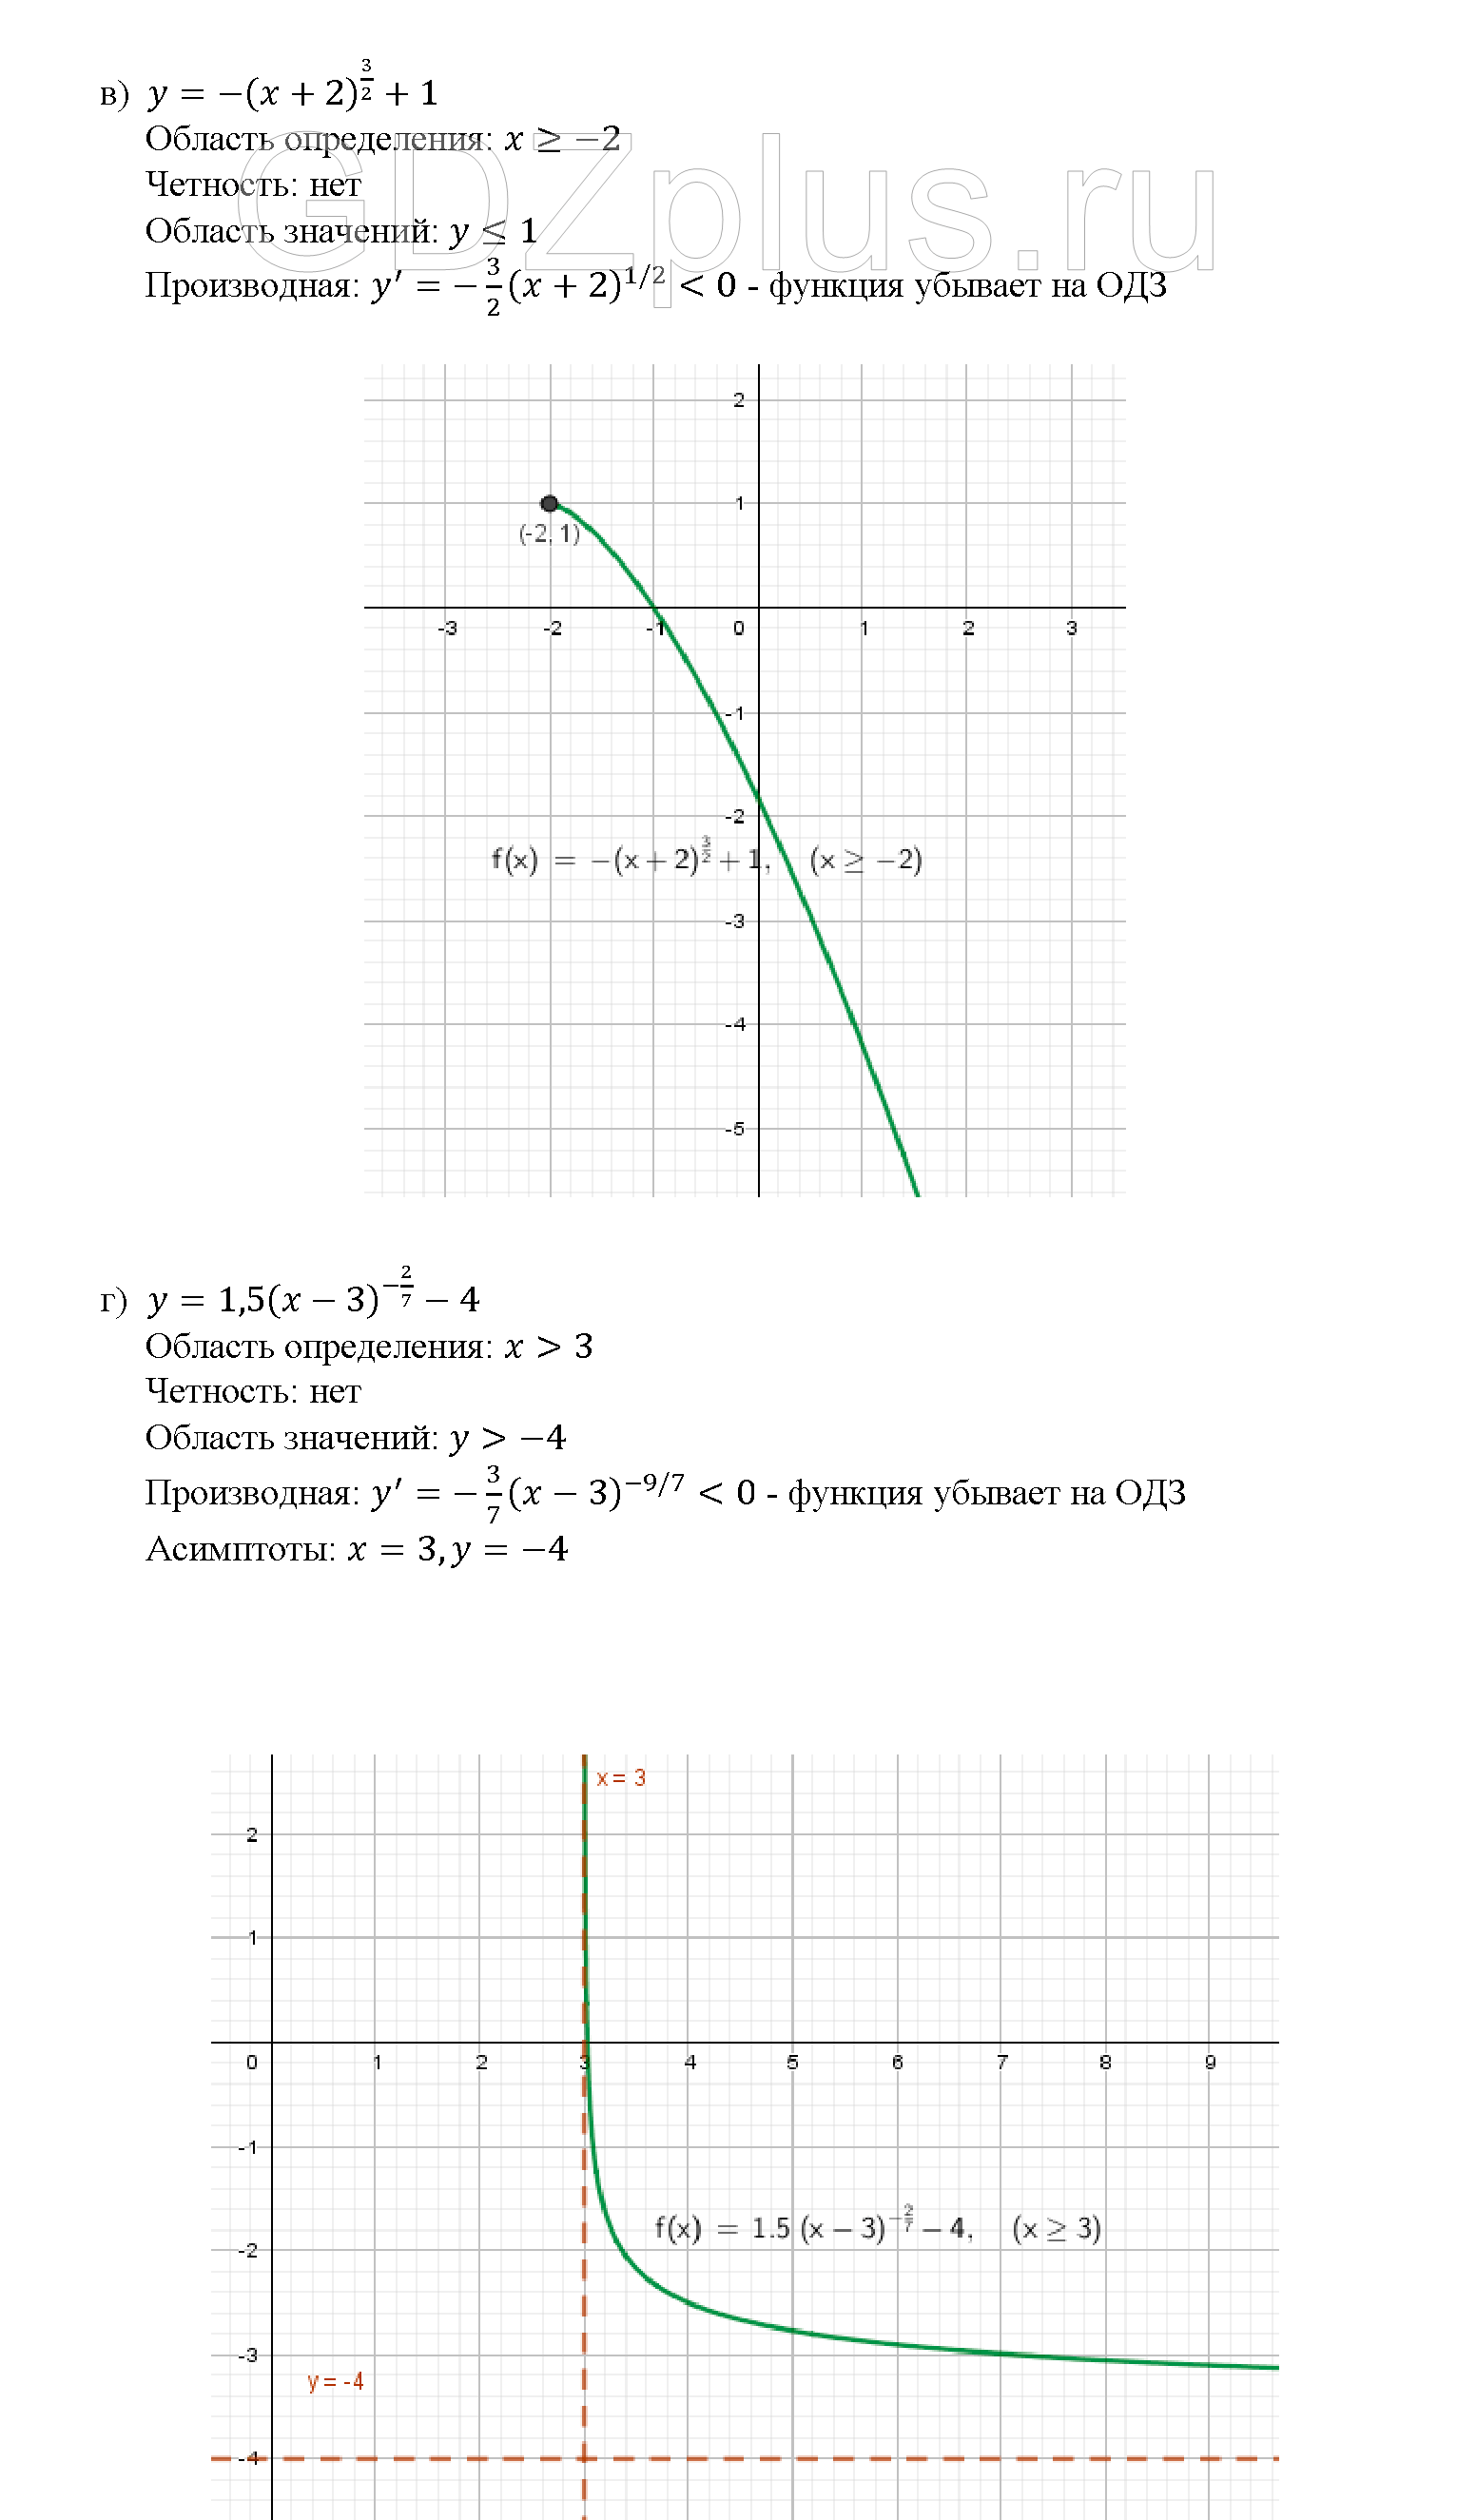 >Алгебра Мордкович 10 класс 60.19